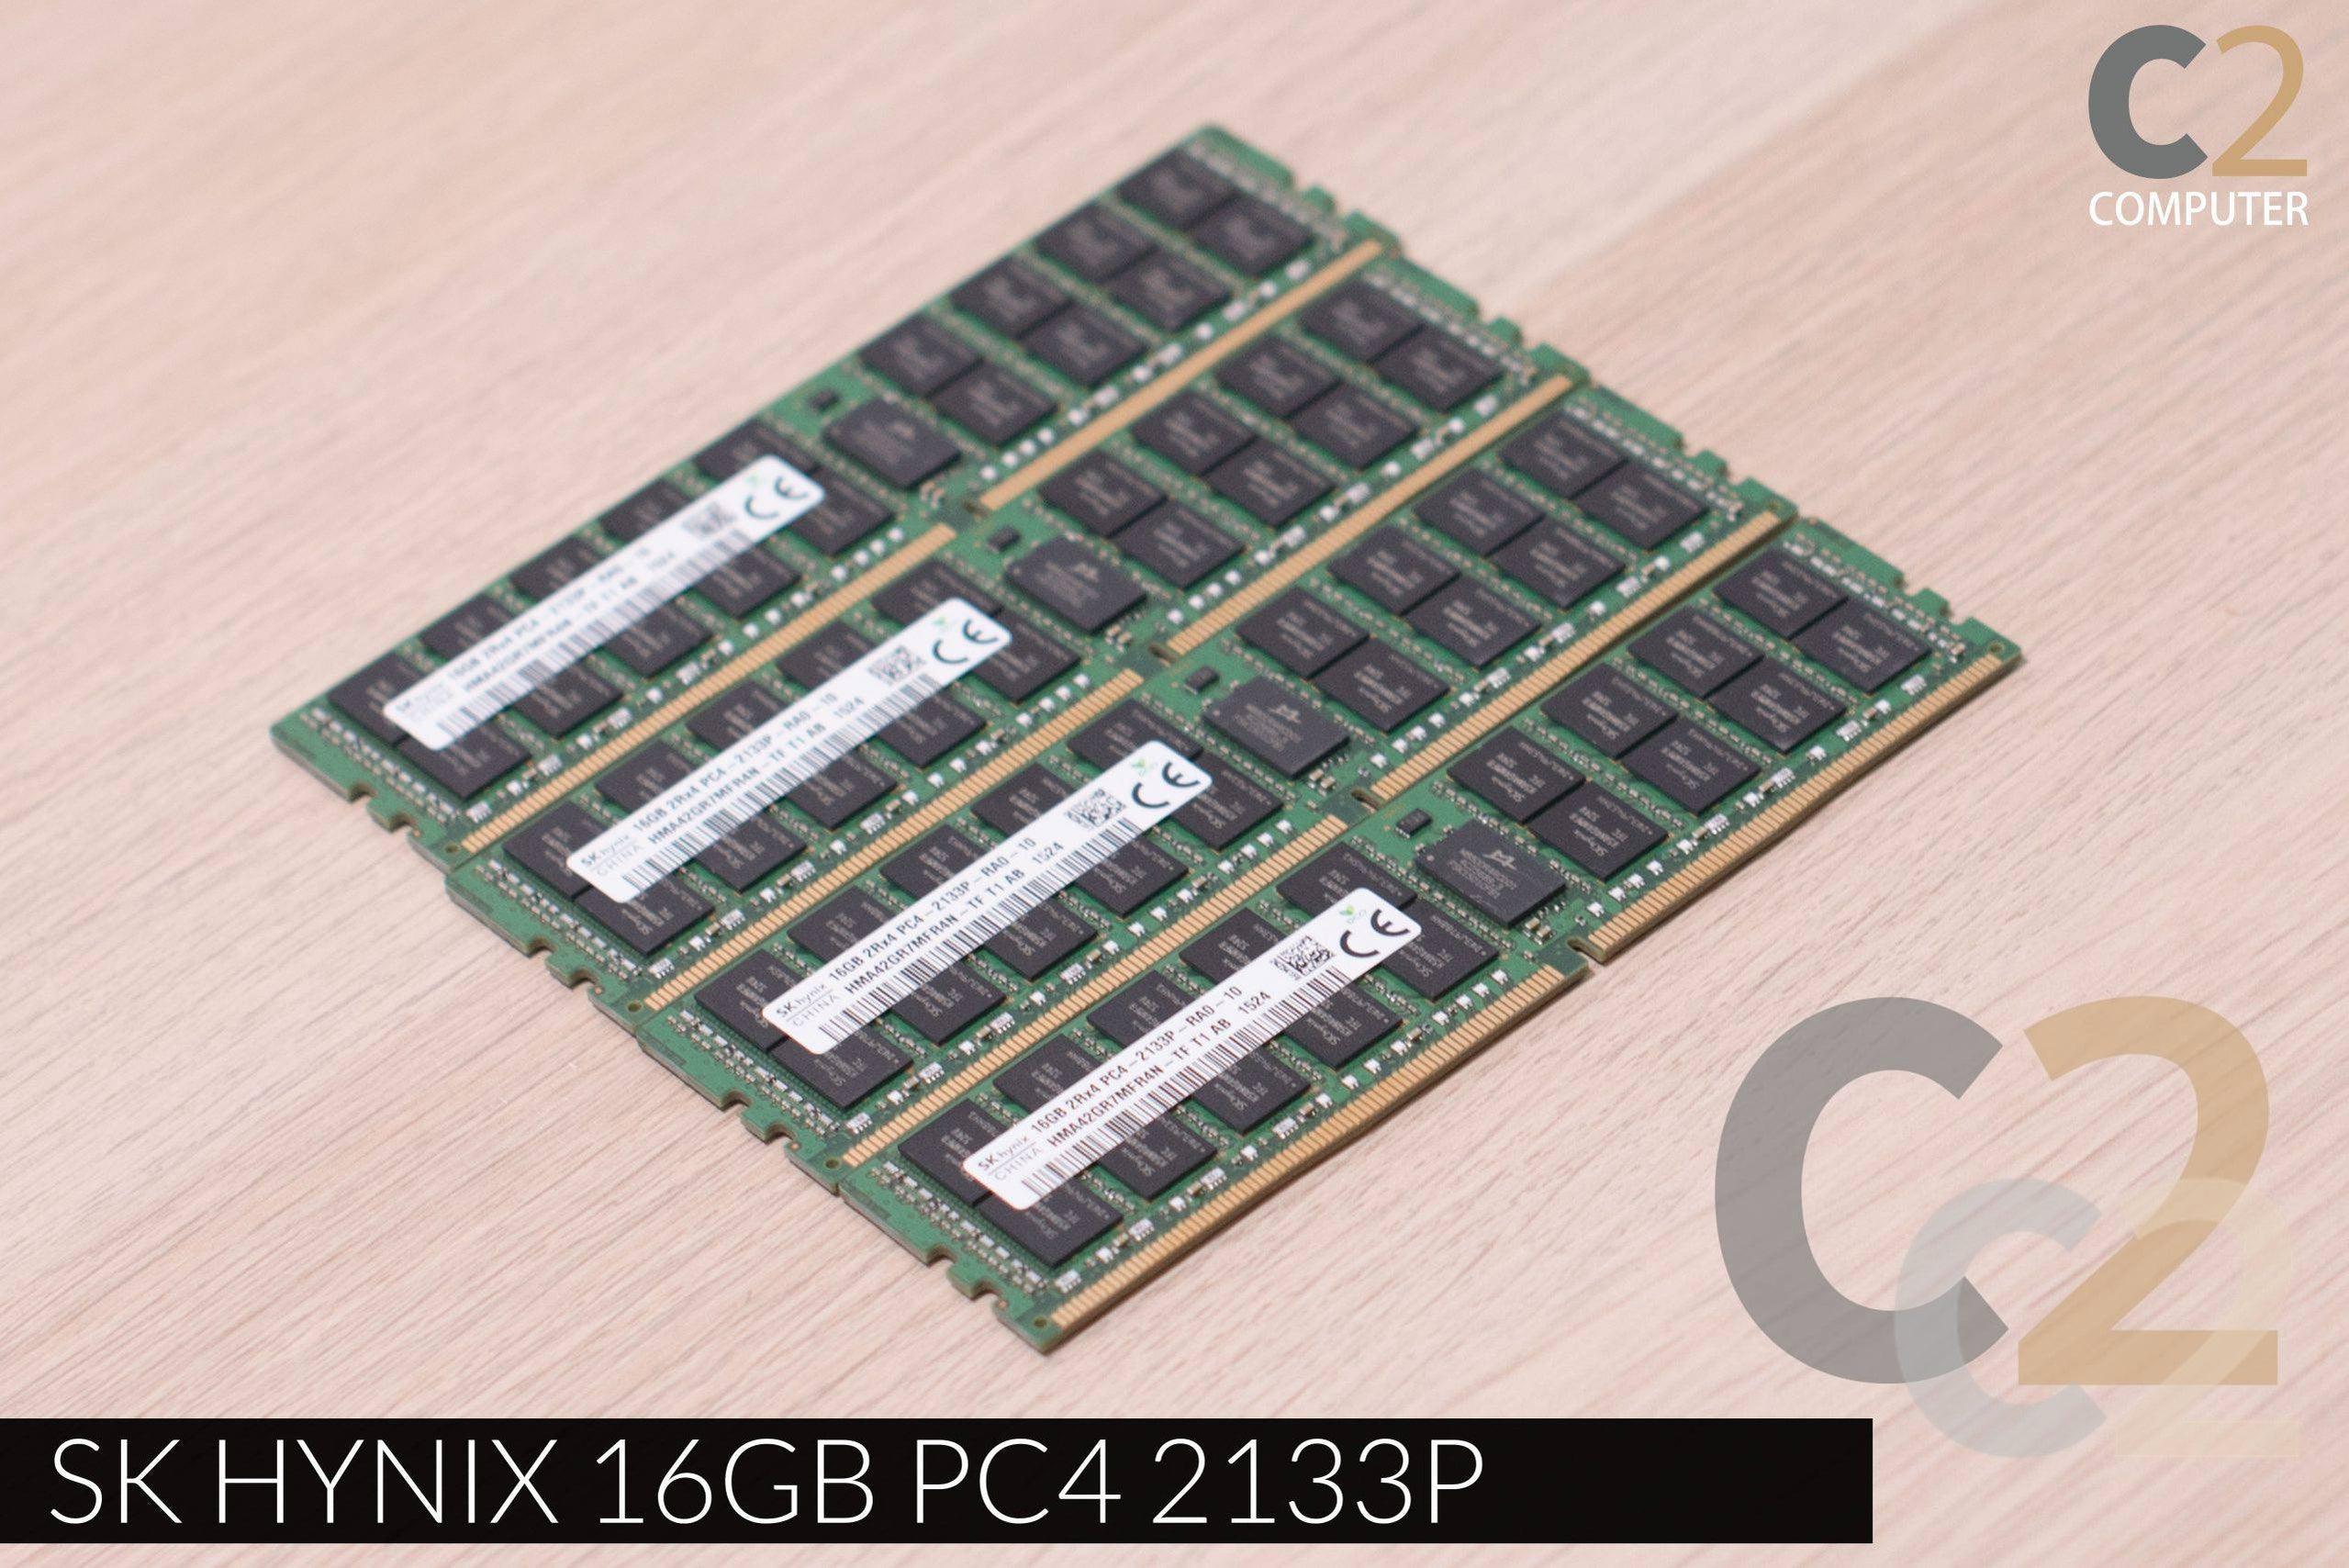 （二手）SK NYNIX 16GB PC4 2133P 90%NEW vendor-unknown